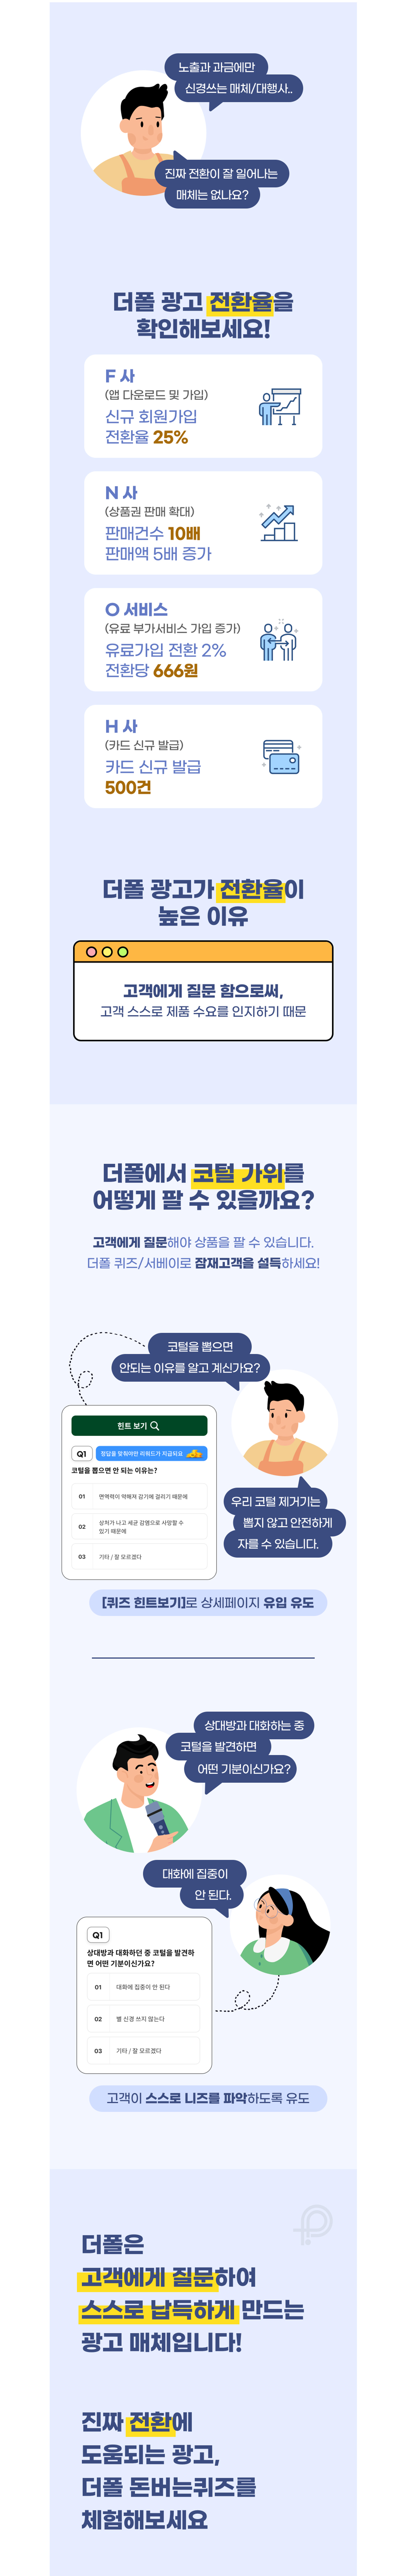 더폴 서베이 퀴즈 광고 상품 소개서 위픽업